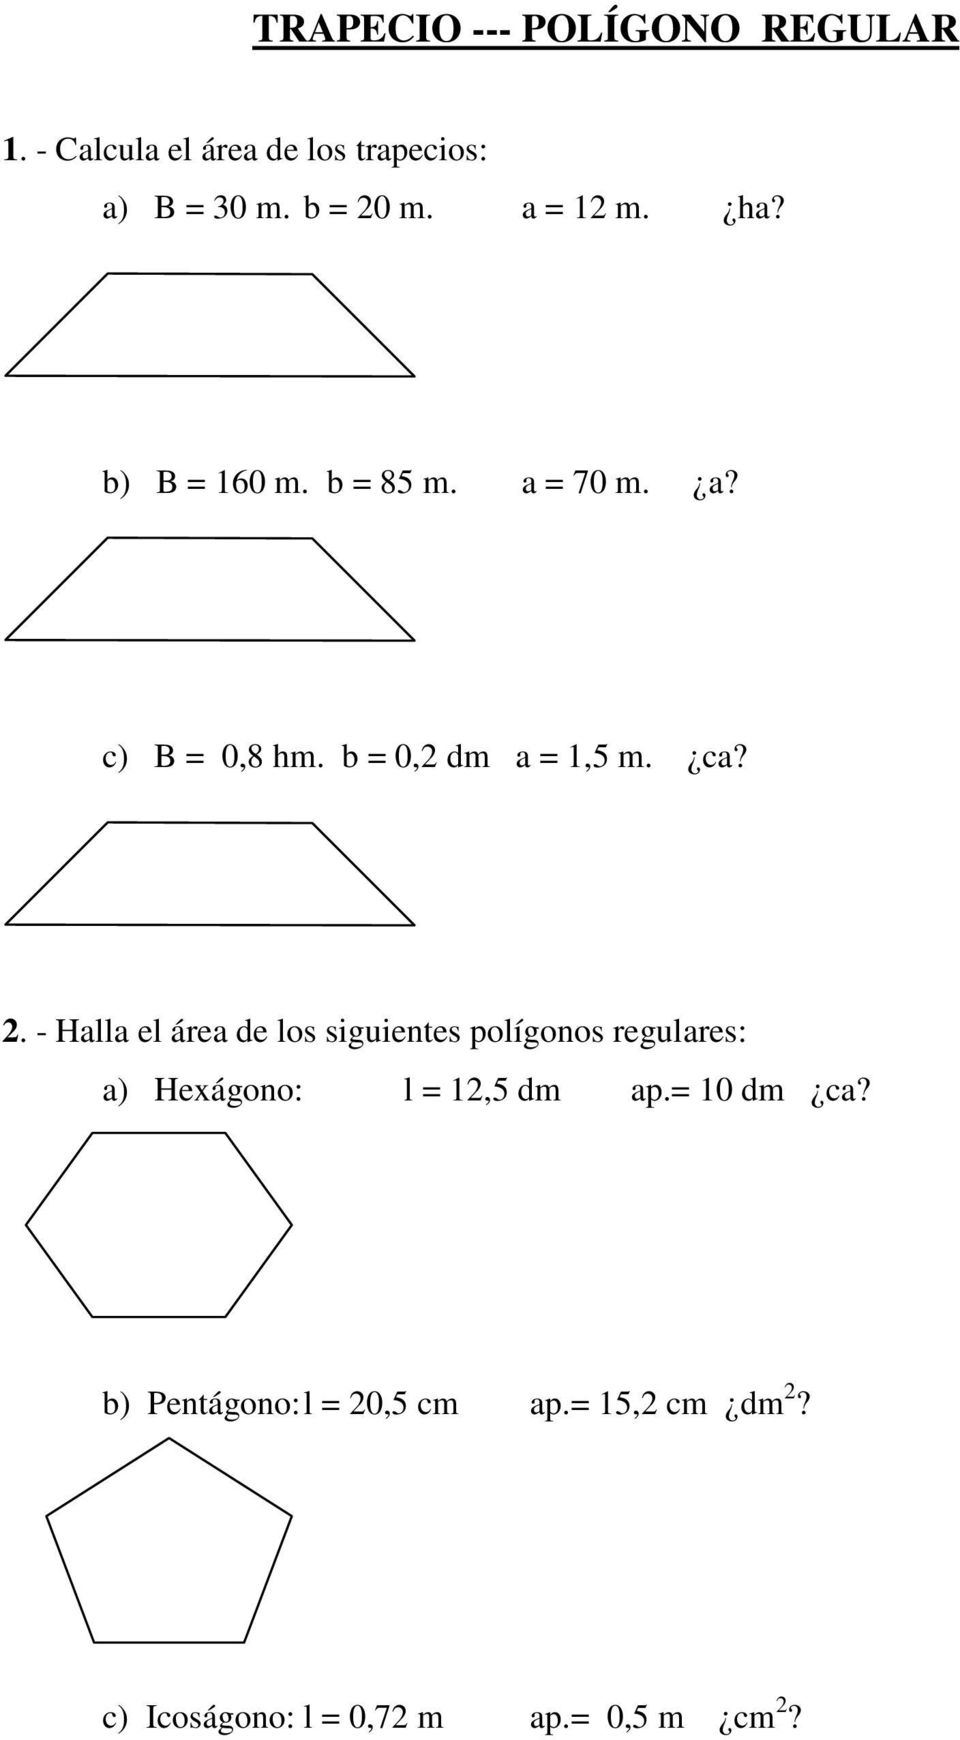 2. - Halla el área de los siguientes polígonos regulares: a) Hexágono: l = 12,5 dm ap.